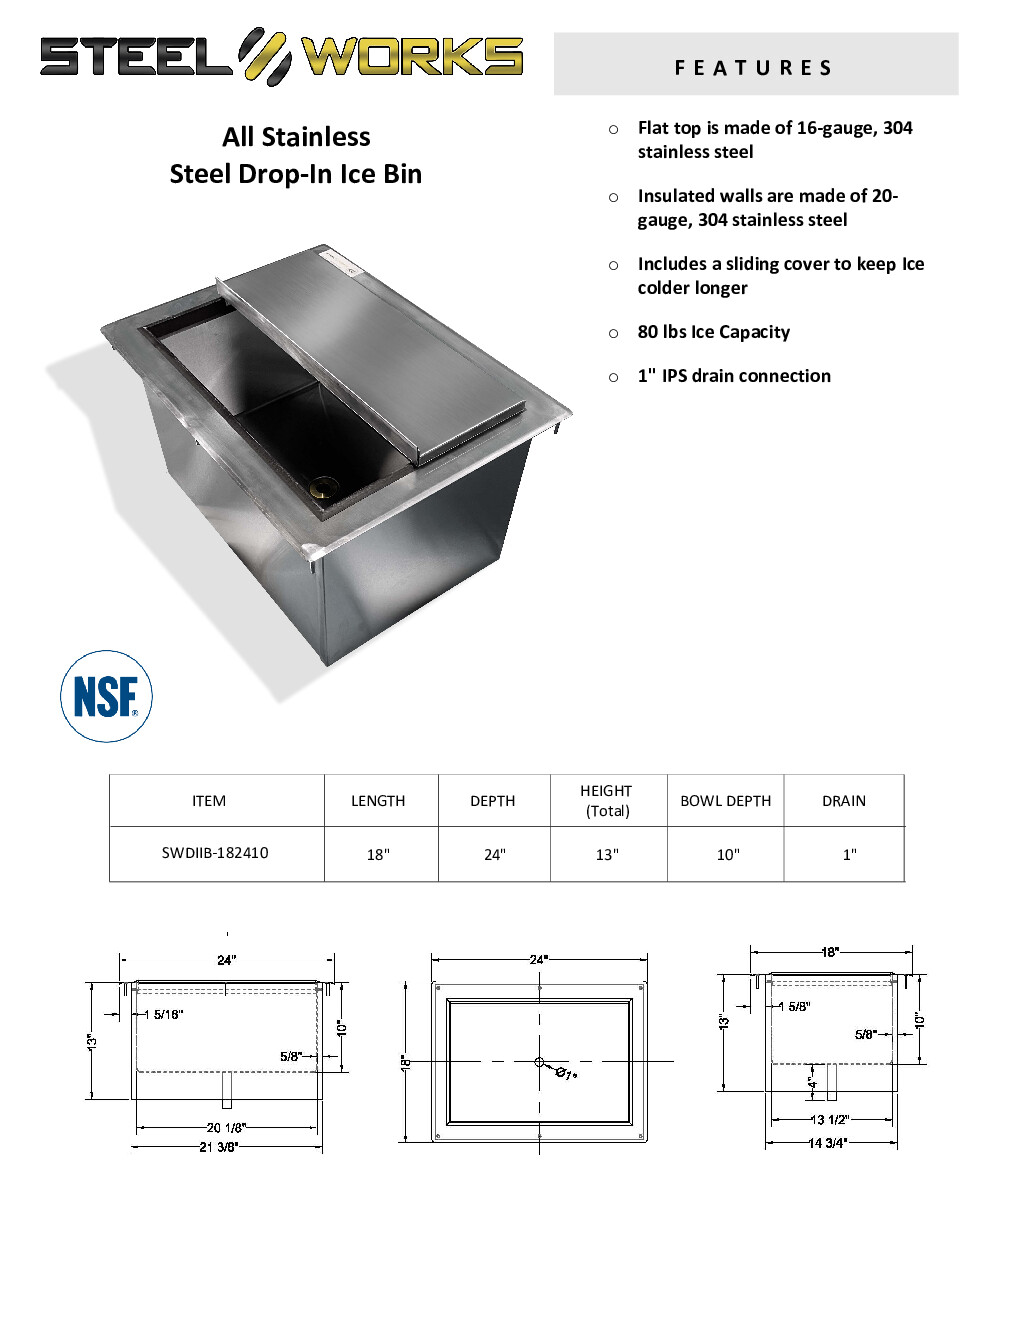 Steel Works SWDIIB-182410 Drop-In Ice Bin